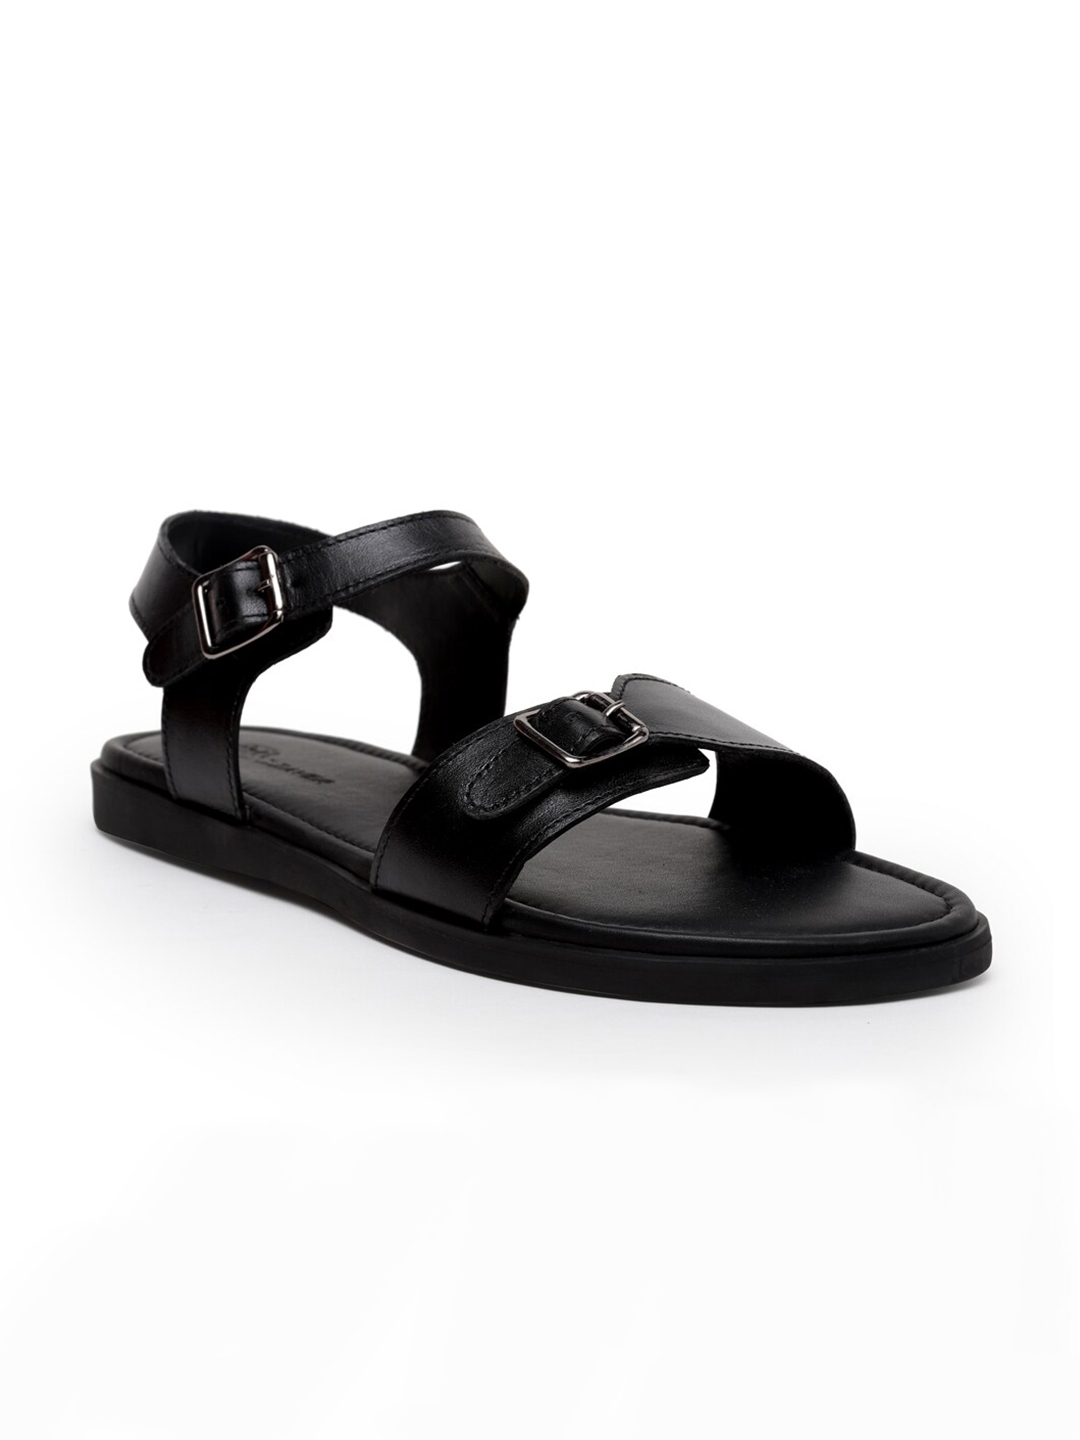 Buy BEAVER Men Black Leather Comfort Sandals - Sandals for Men 14527878 ...